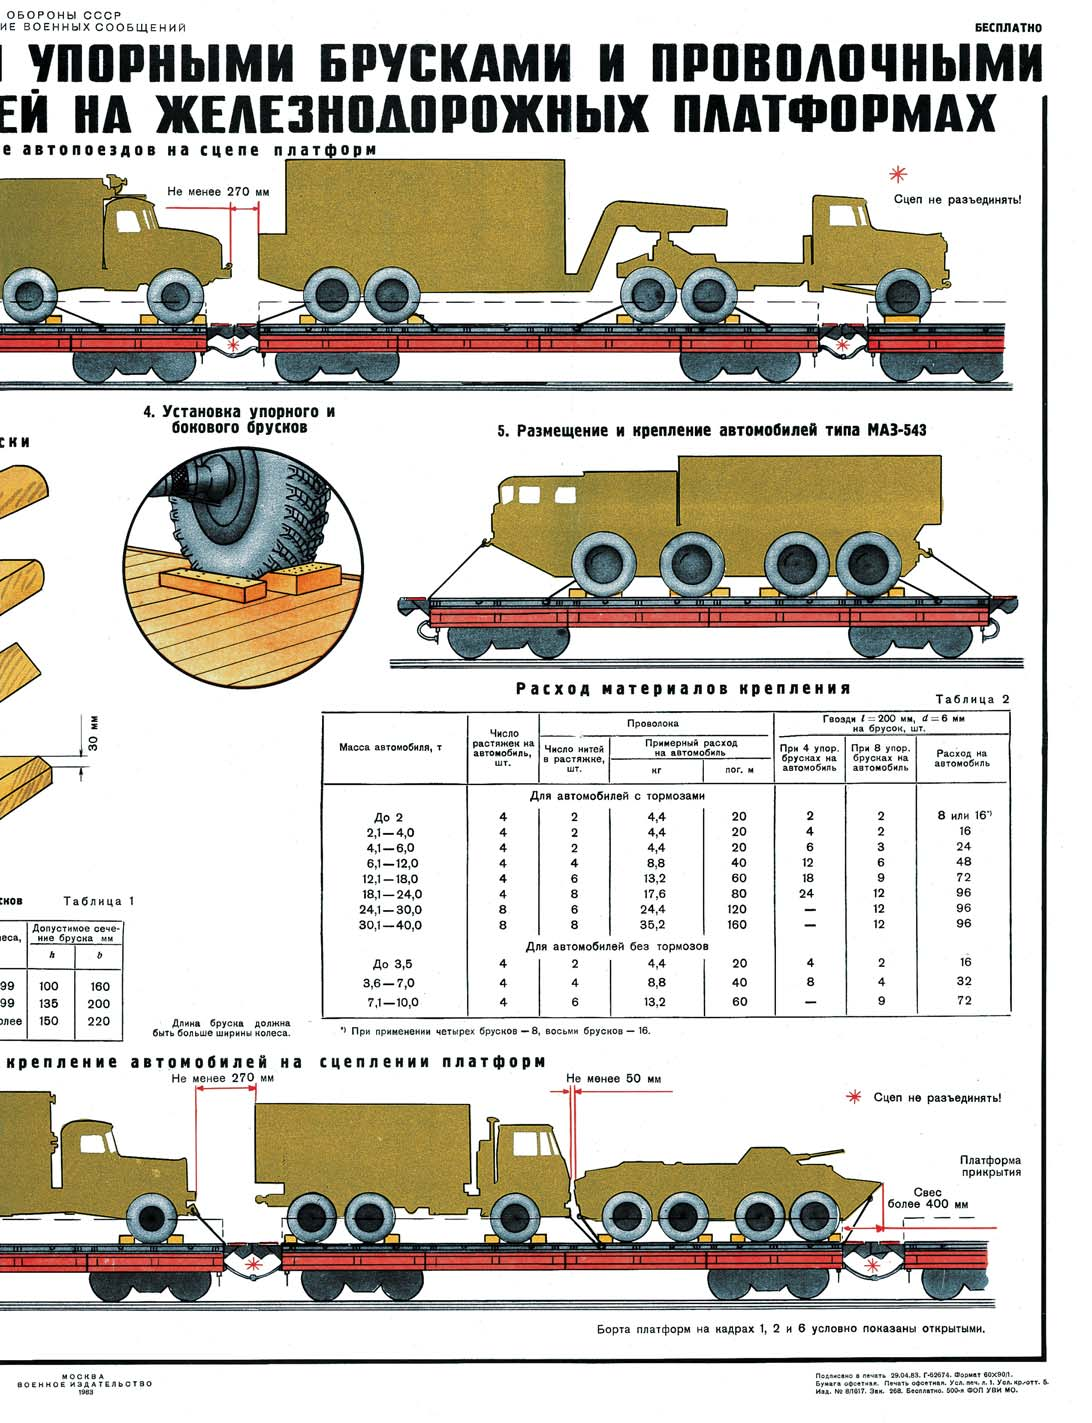 Zur Vorbereitung der Truppe auf Eisenbahnmilitärtransporte verwendeten die sowjetischen Streitkräfte Lehrtafeln, die das erforderliche Wissen in sehr